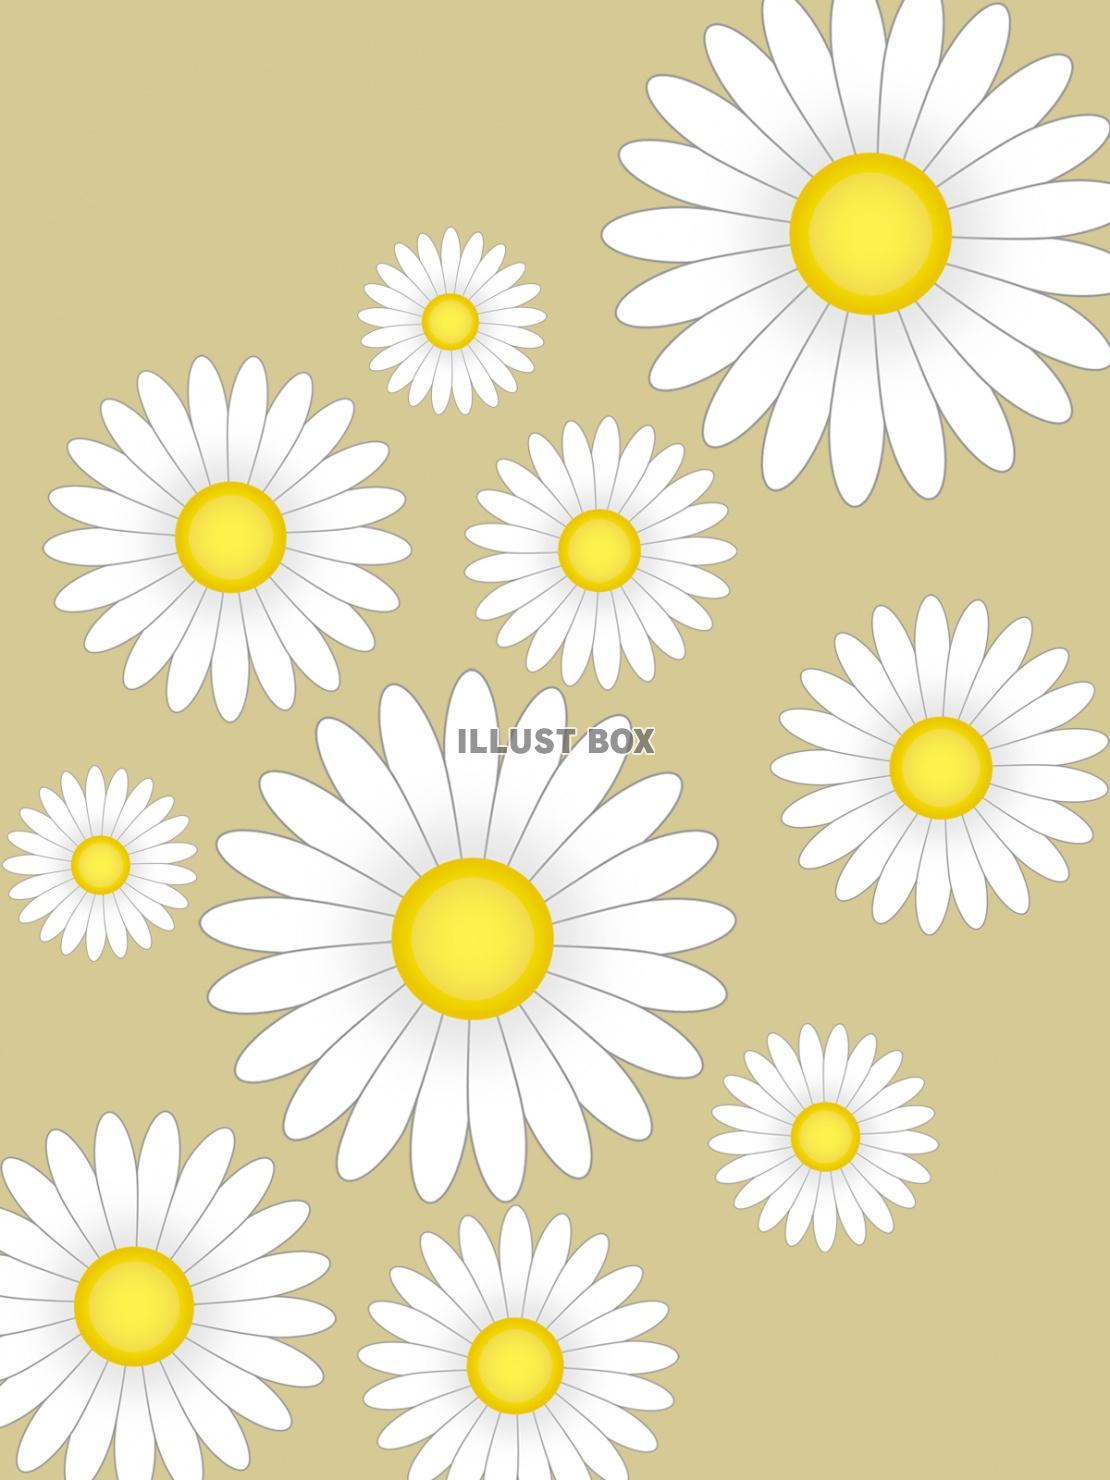 無料イラスト 白いお花模様壁紙シンプル背景素材イラスト